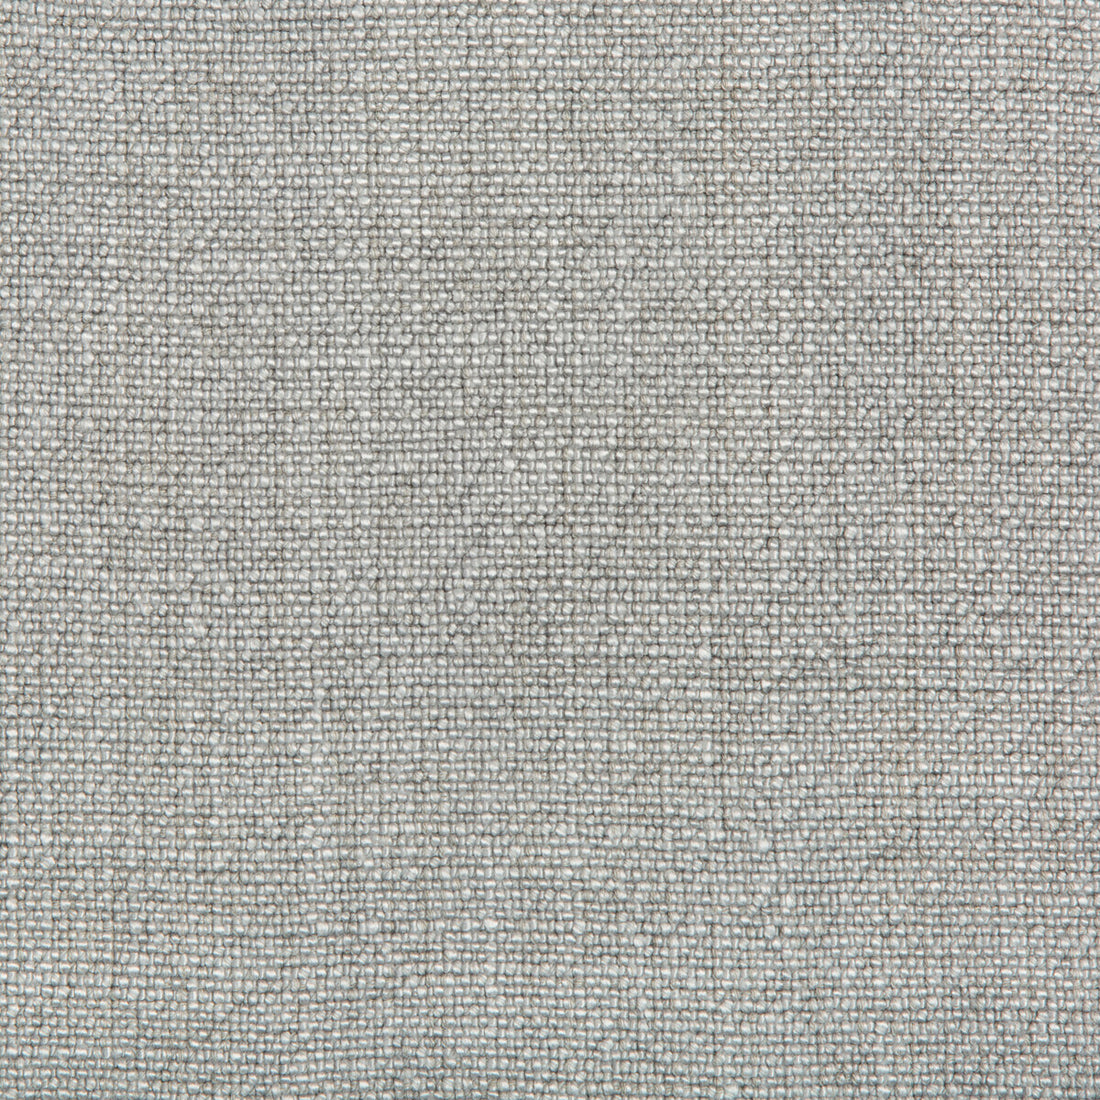 Kravet Basics fabric in 35189-11 color - pattern 35189.11.0 - by Kravet Basics